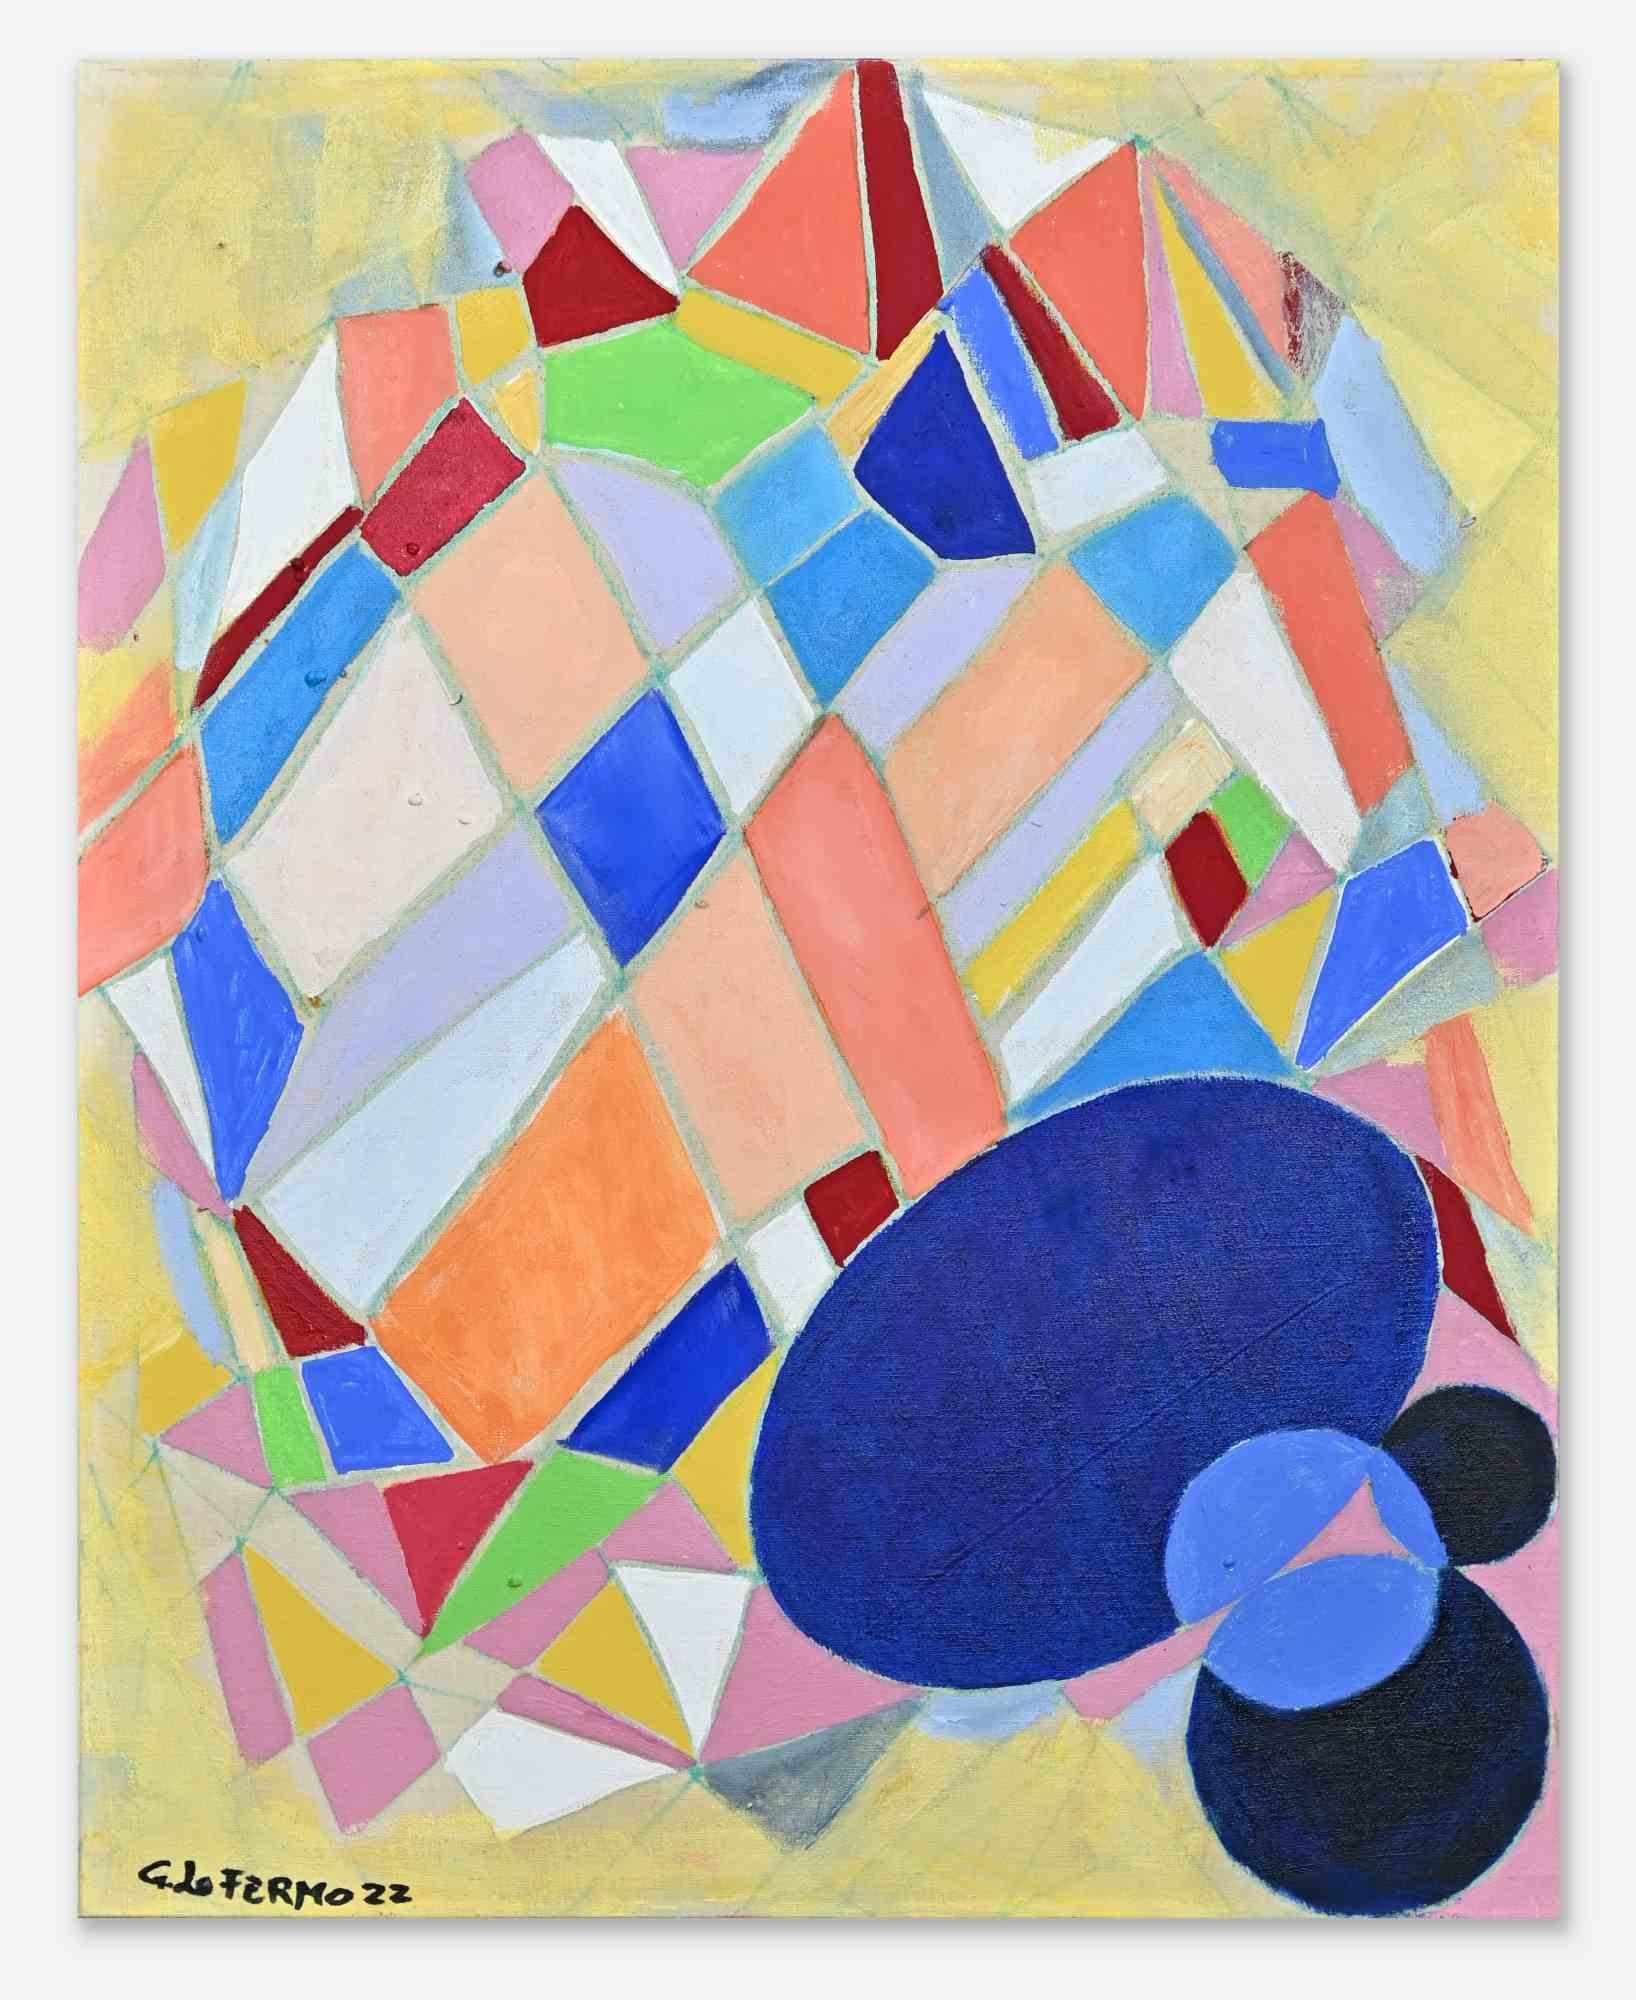 Colored facets ist ein Originalkunstwerk von Giorgio Lo Fermo (geb. 1947) aus dem Jahr 2022.

Original Ölgemälde auf Leinwand.

Handsigniert und datiert am linken unteren Rand und auf der Rückseite der Leinwand.

Gute Bedingungen.

Giorgio Lo Fermo